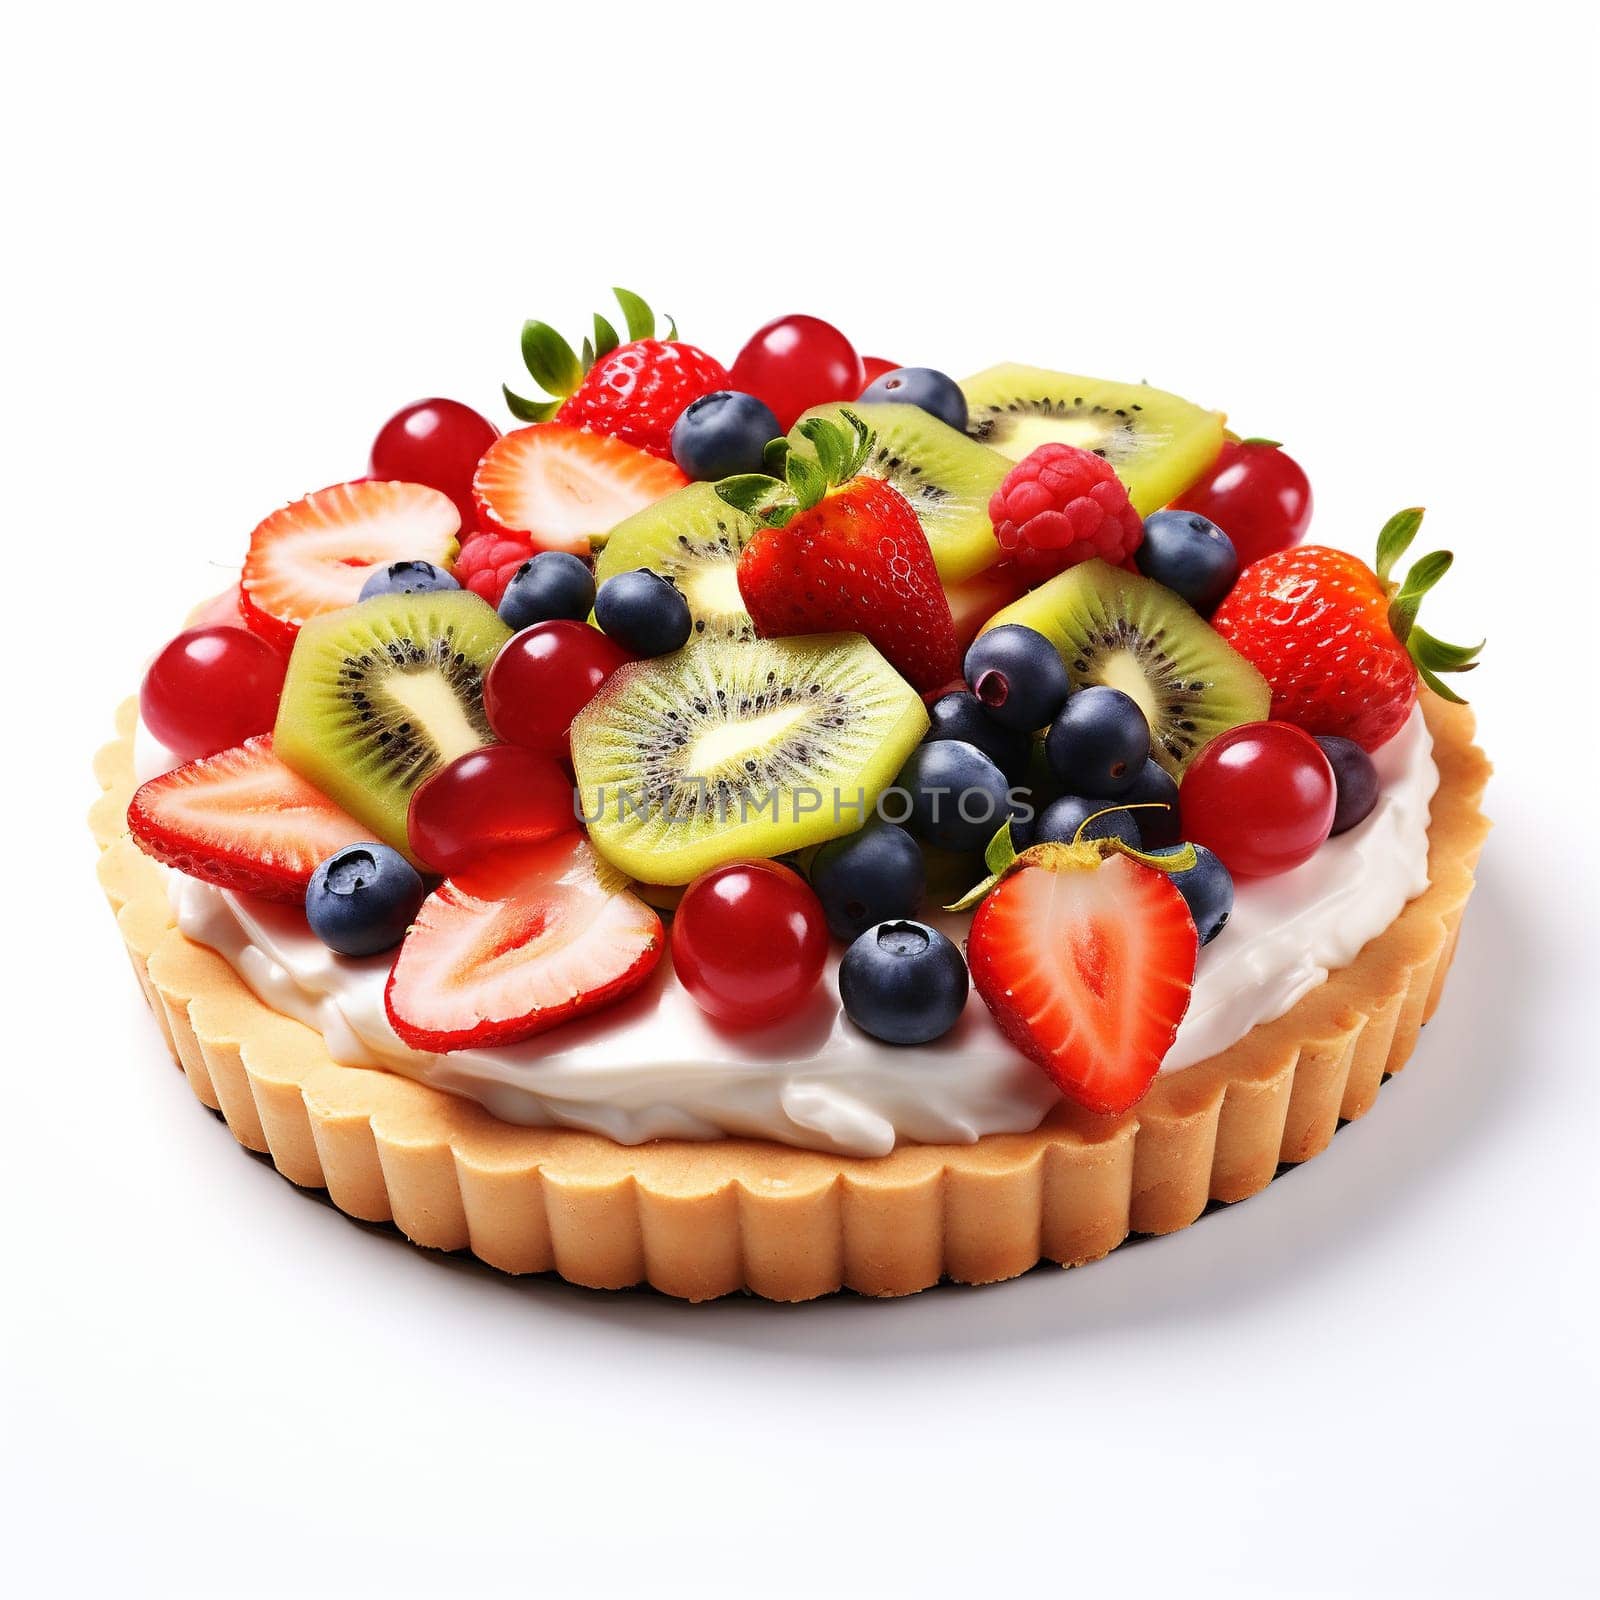 Tasty Fruit Pie on White Background. by Rina_Dozornaya